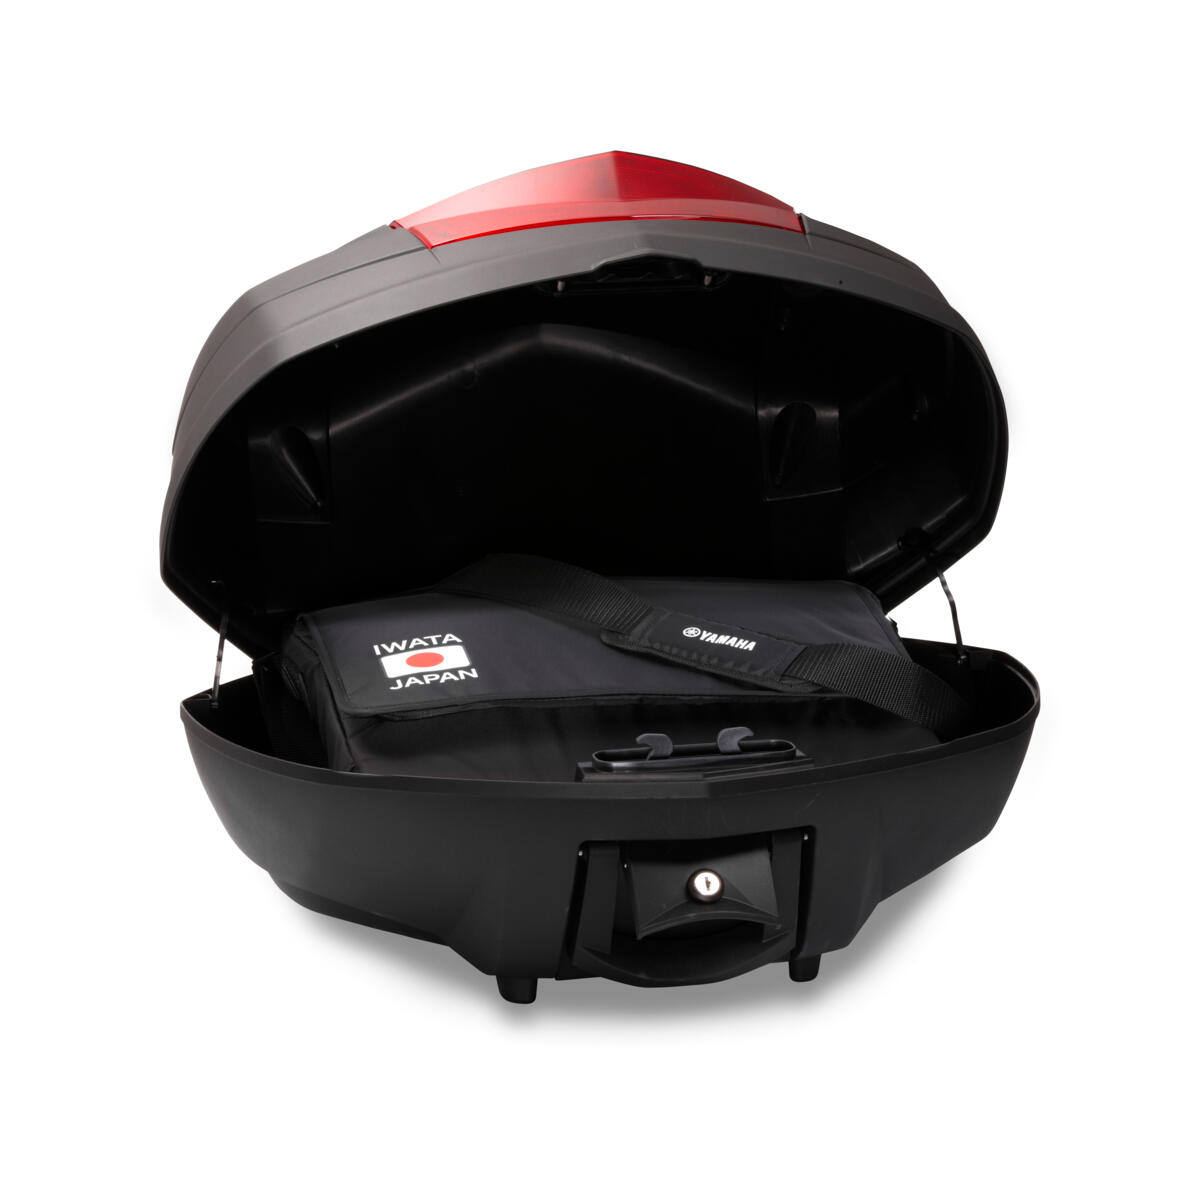 Качествен горен багажник за допълнително място за багаж/съхранение върху вашата Yamaha.